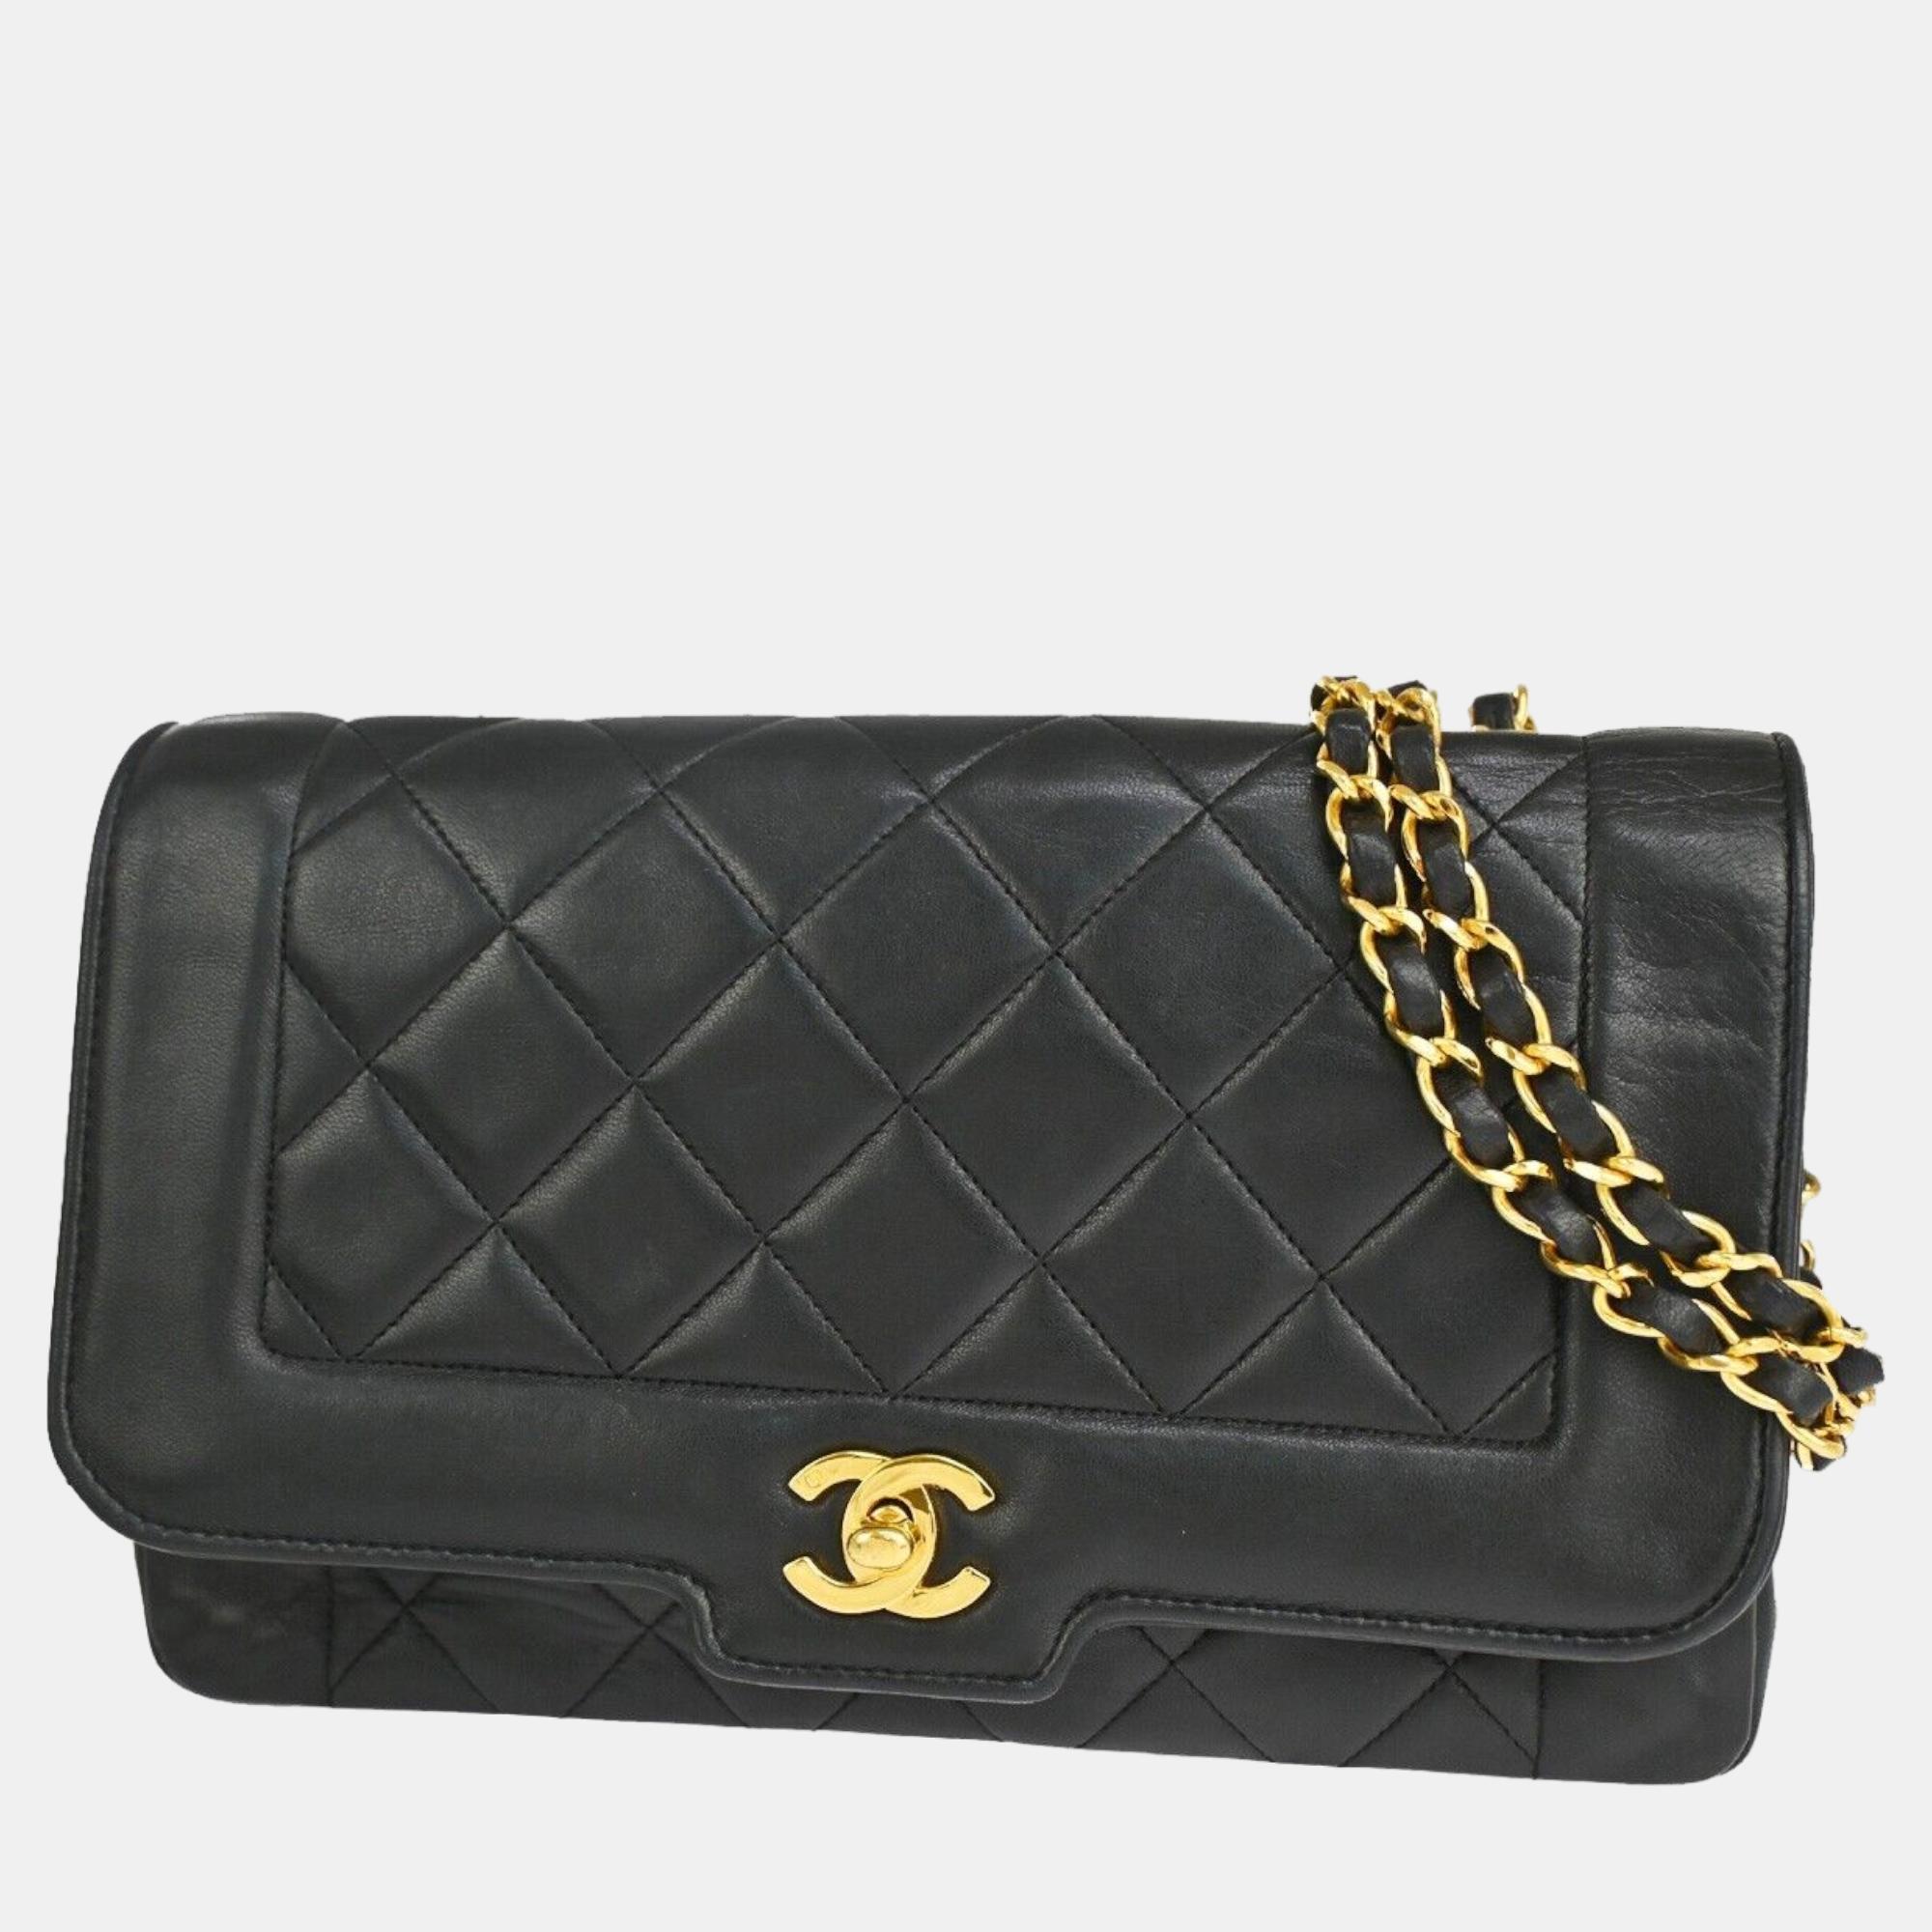 Chanel black leather diana shoulder bag